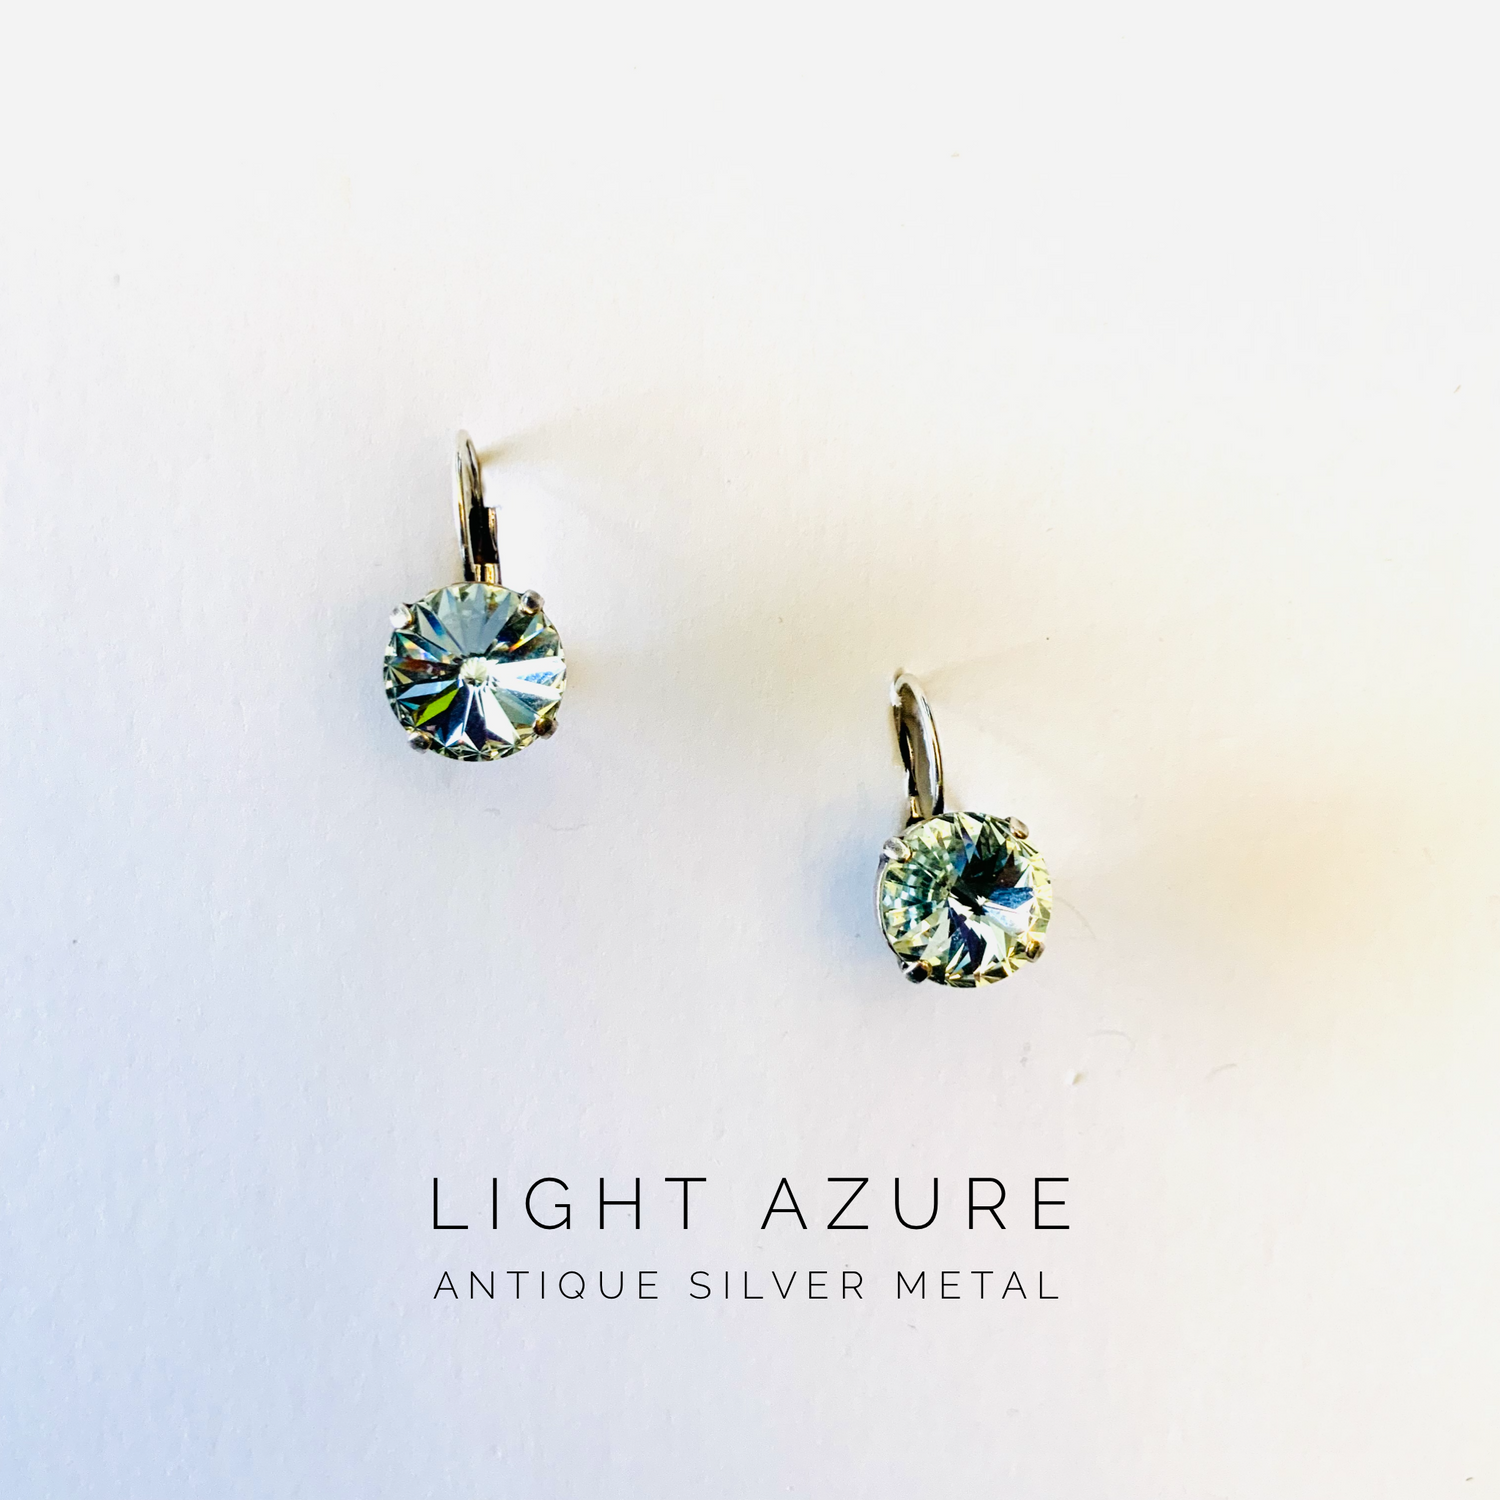 12mm Drop or Post Earrings in Light Azure